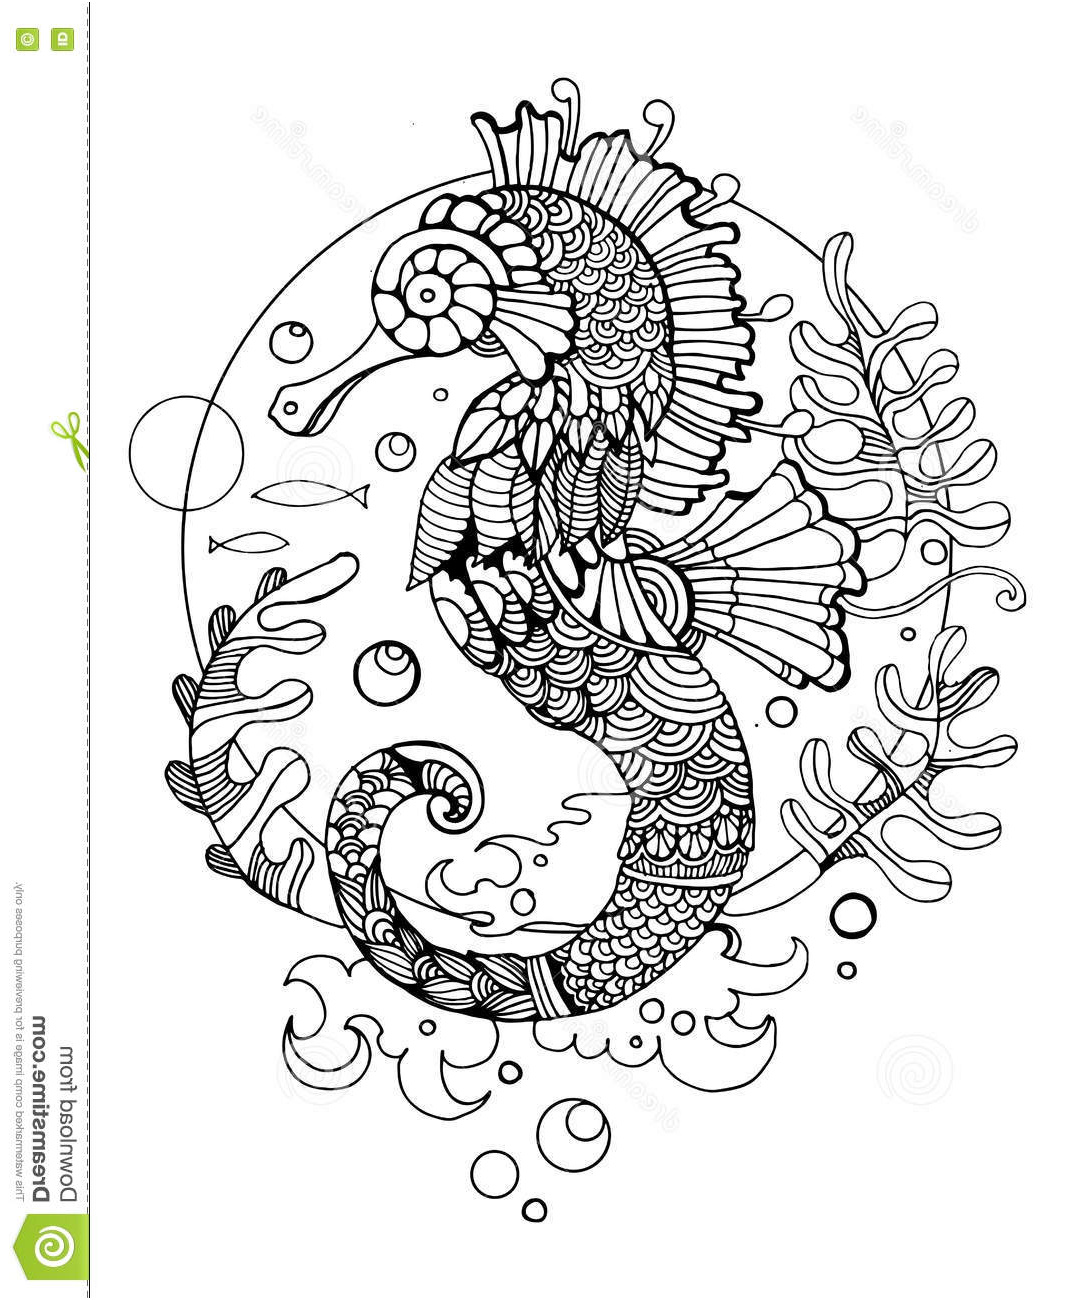 illustration stock livre de coloriage d hippocampe pour le vecteur d adultes image